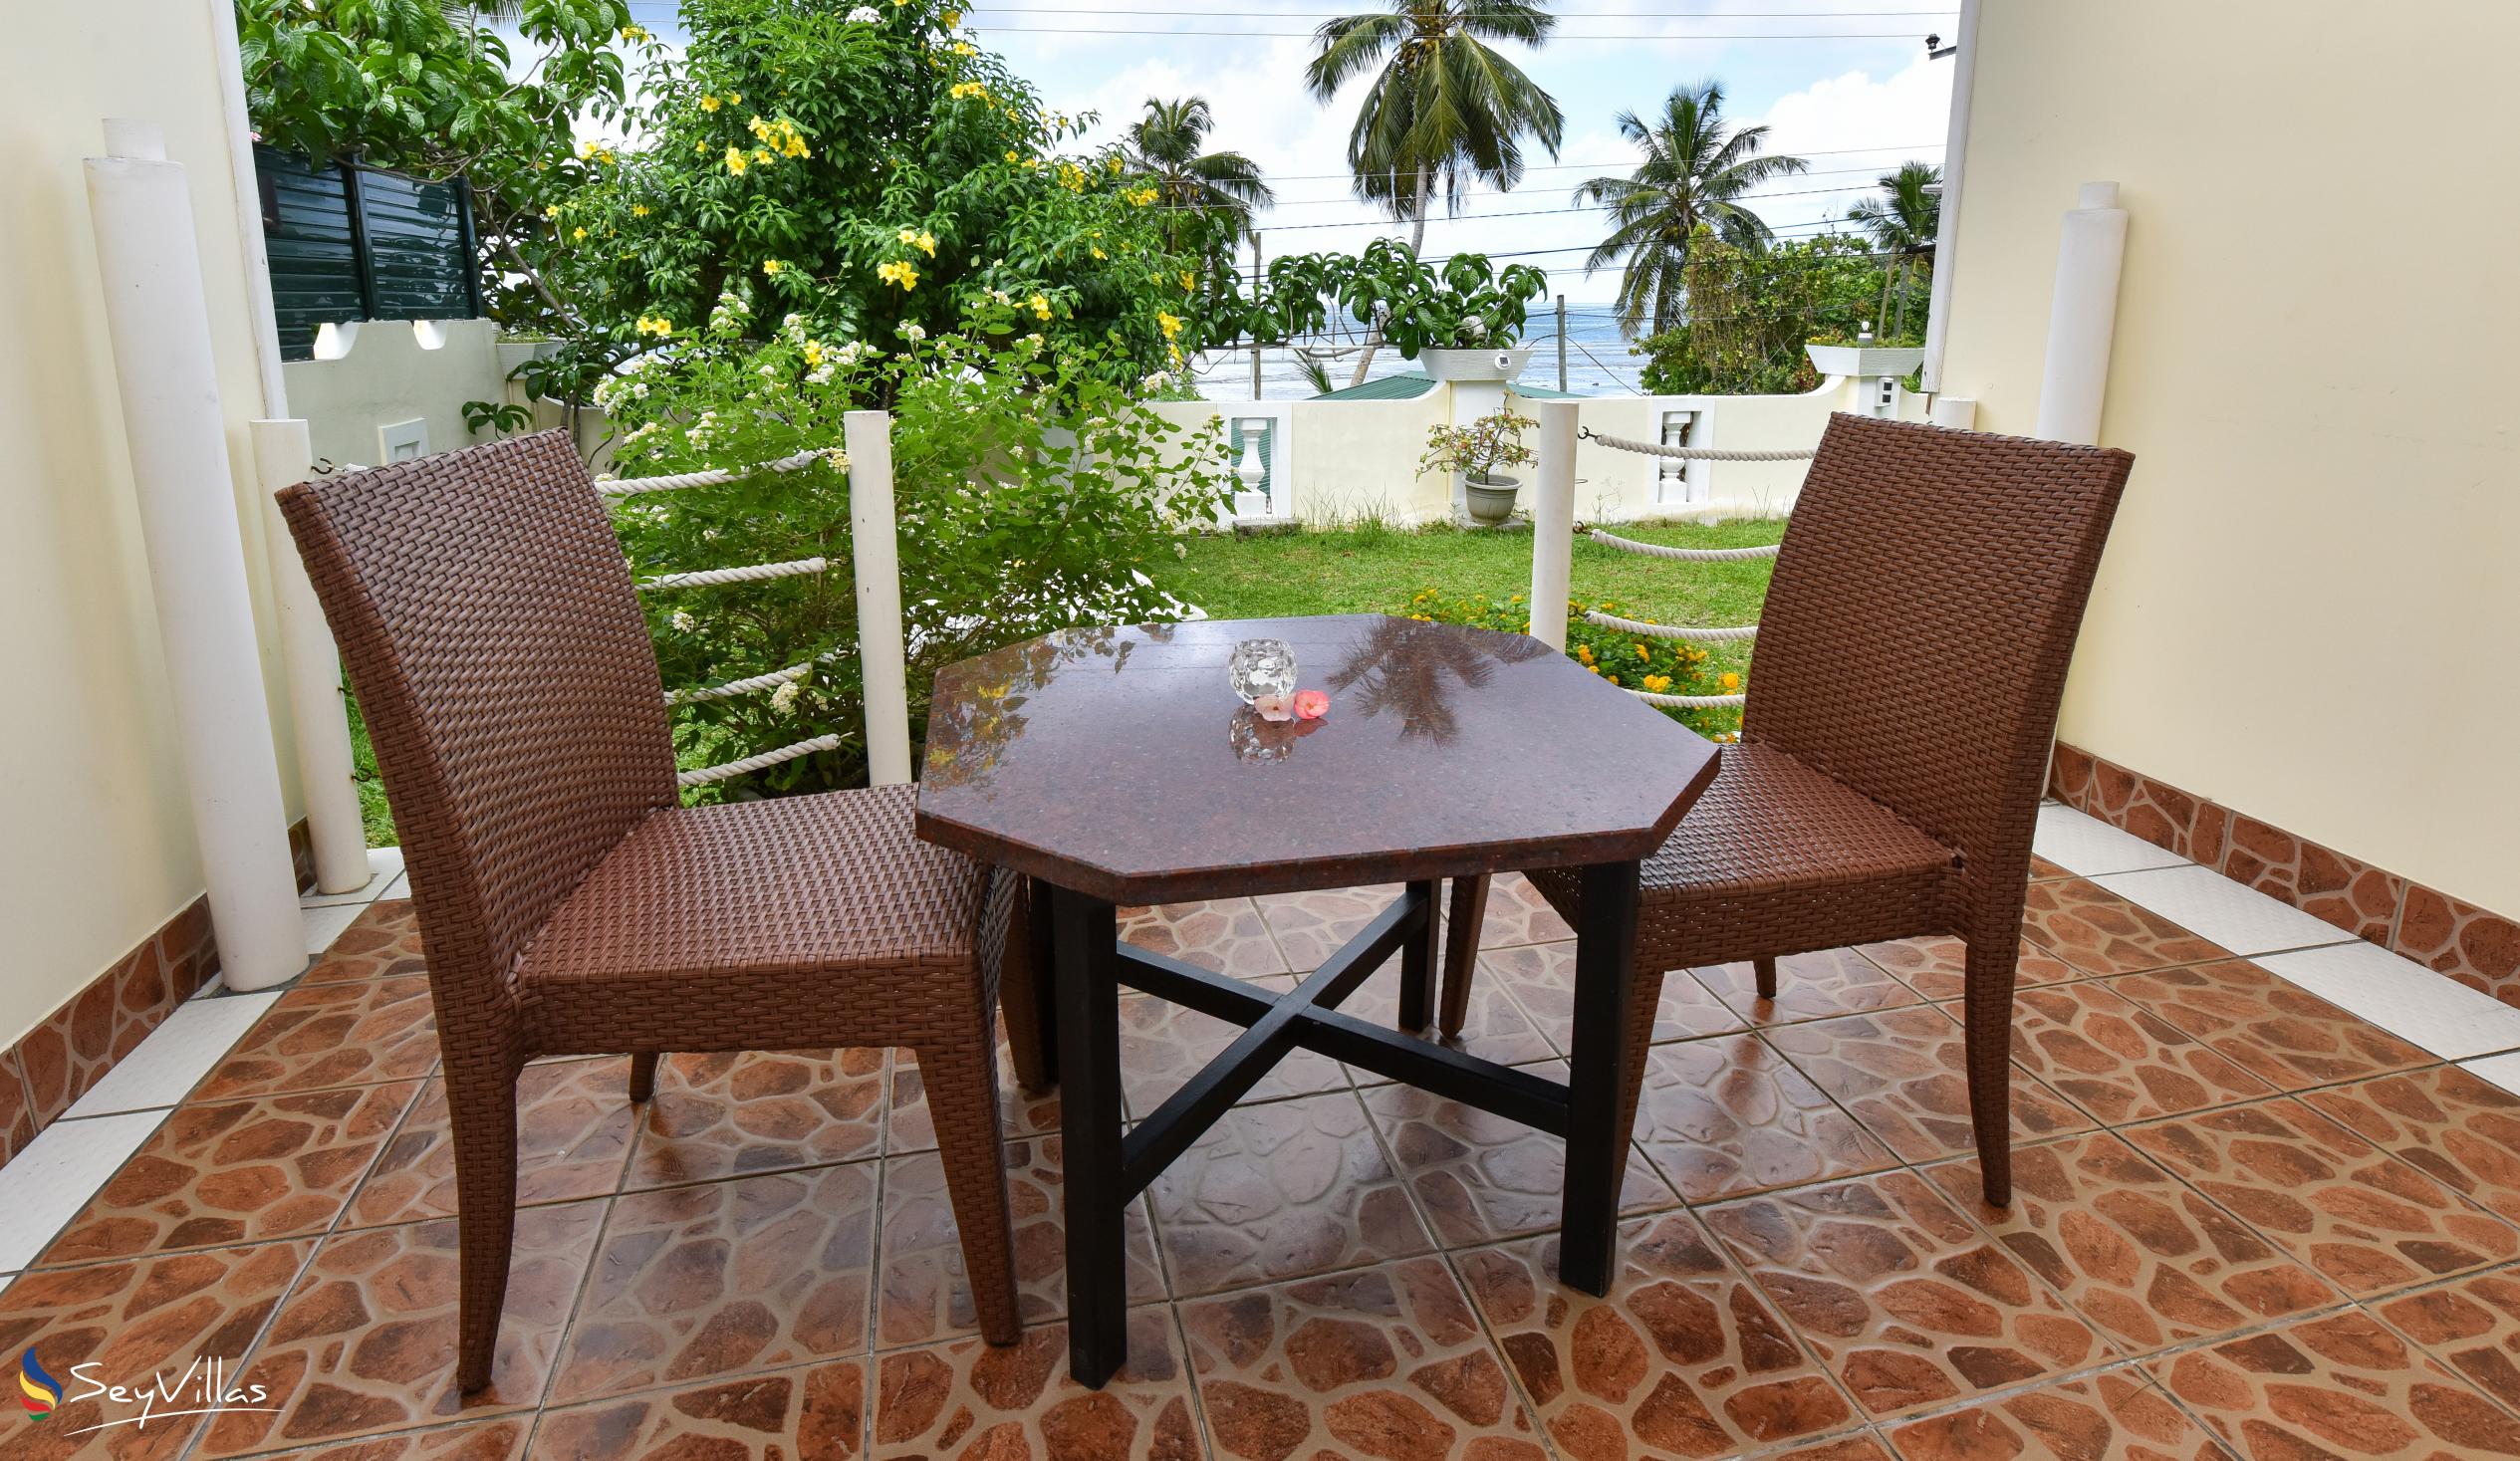 Foto 11: Anse Norwa Self Catering - Appartamento a pianterreno (Bonito) - Mahé (Seychelles)